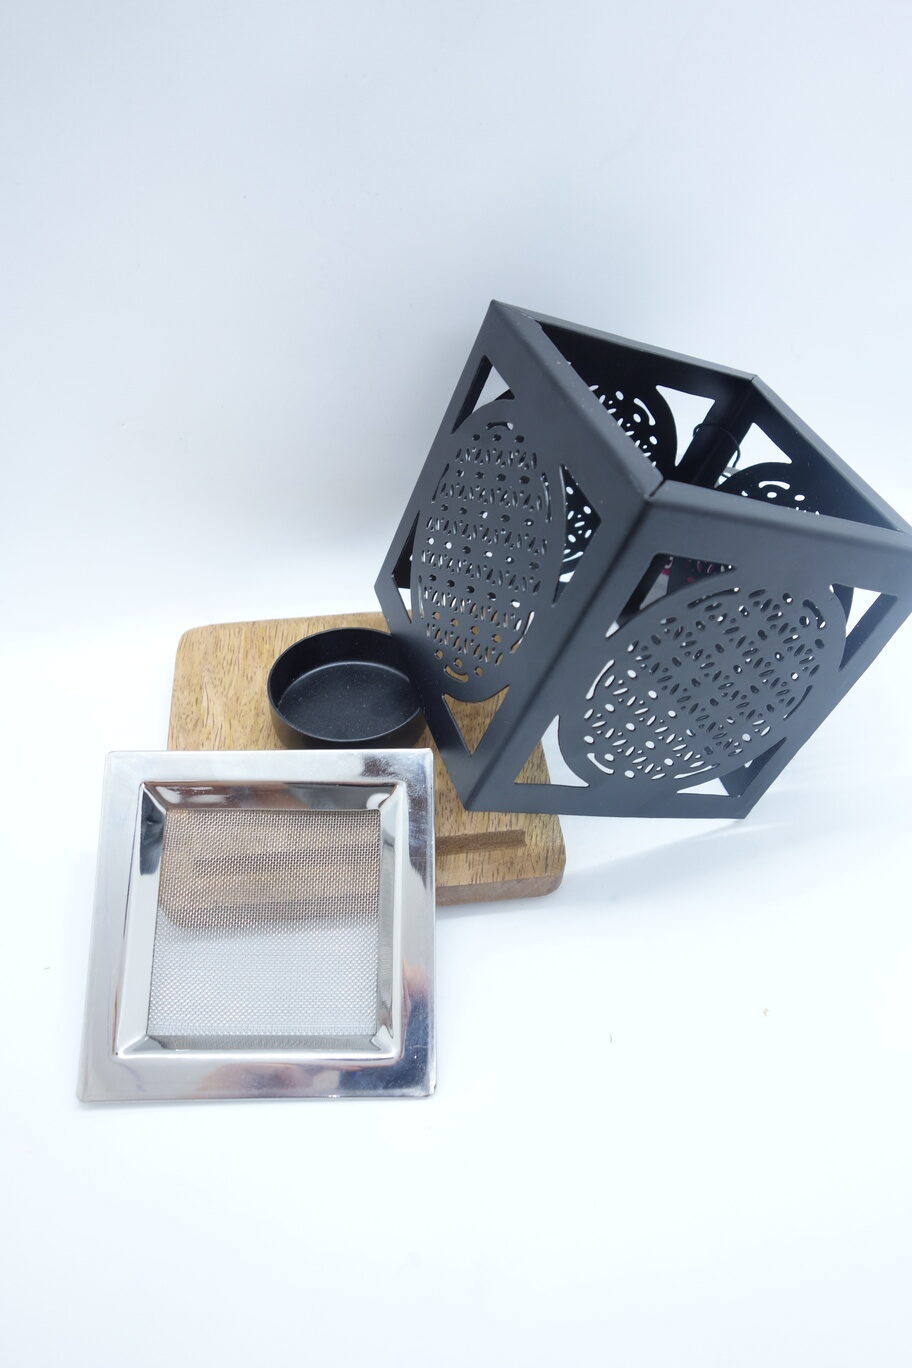 Räucherstövchen (alle Einzelteile sichtbar) quadratisch mit Mangoholzstockel, Metallgehäuse und Sieb